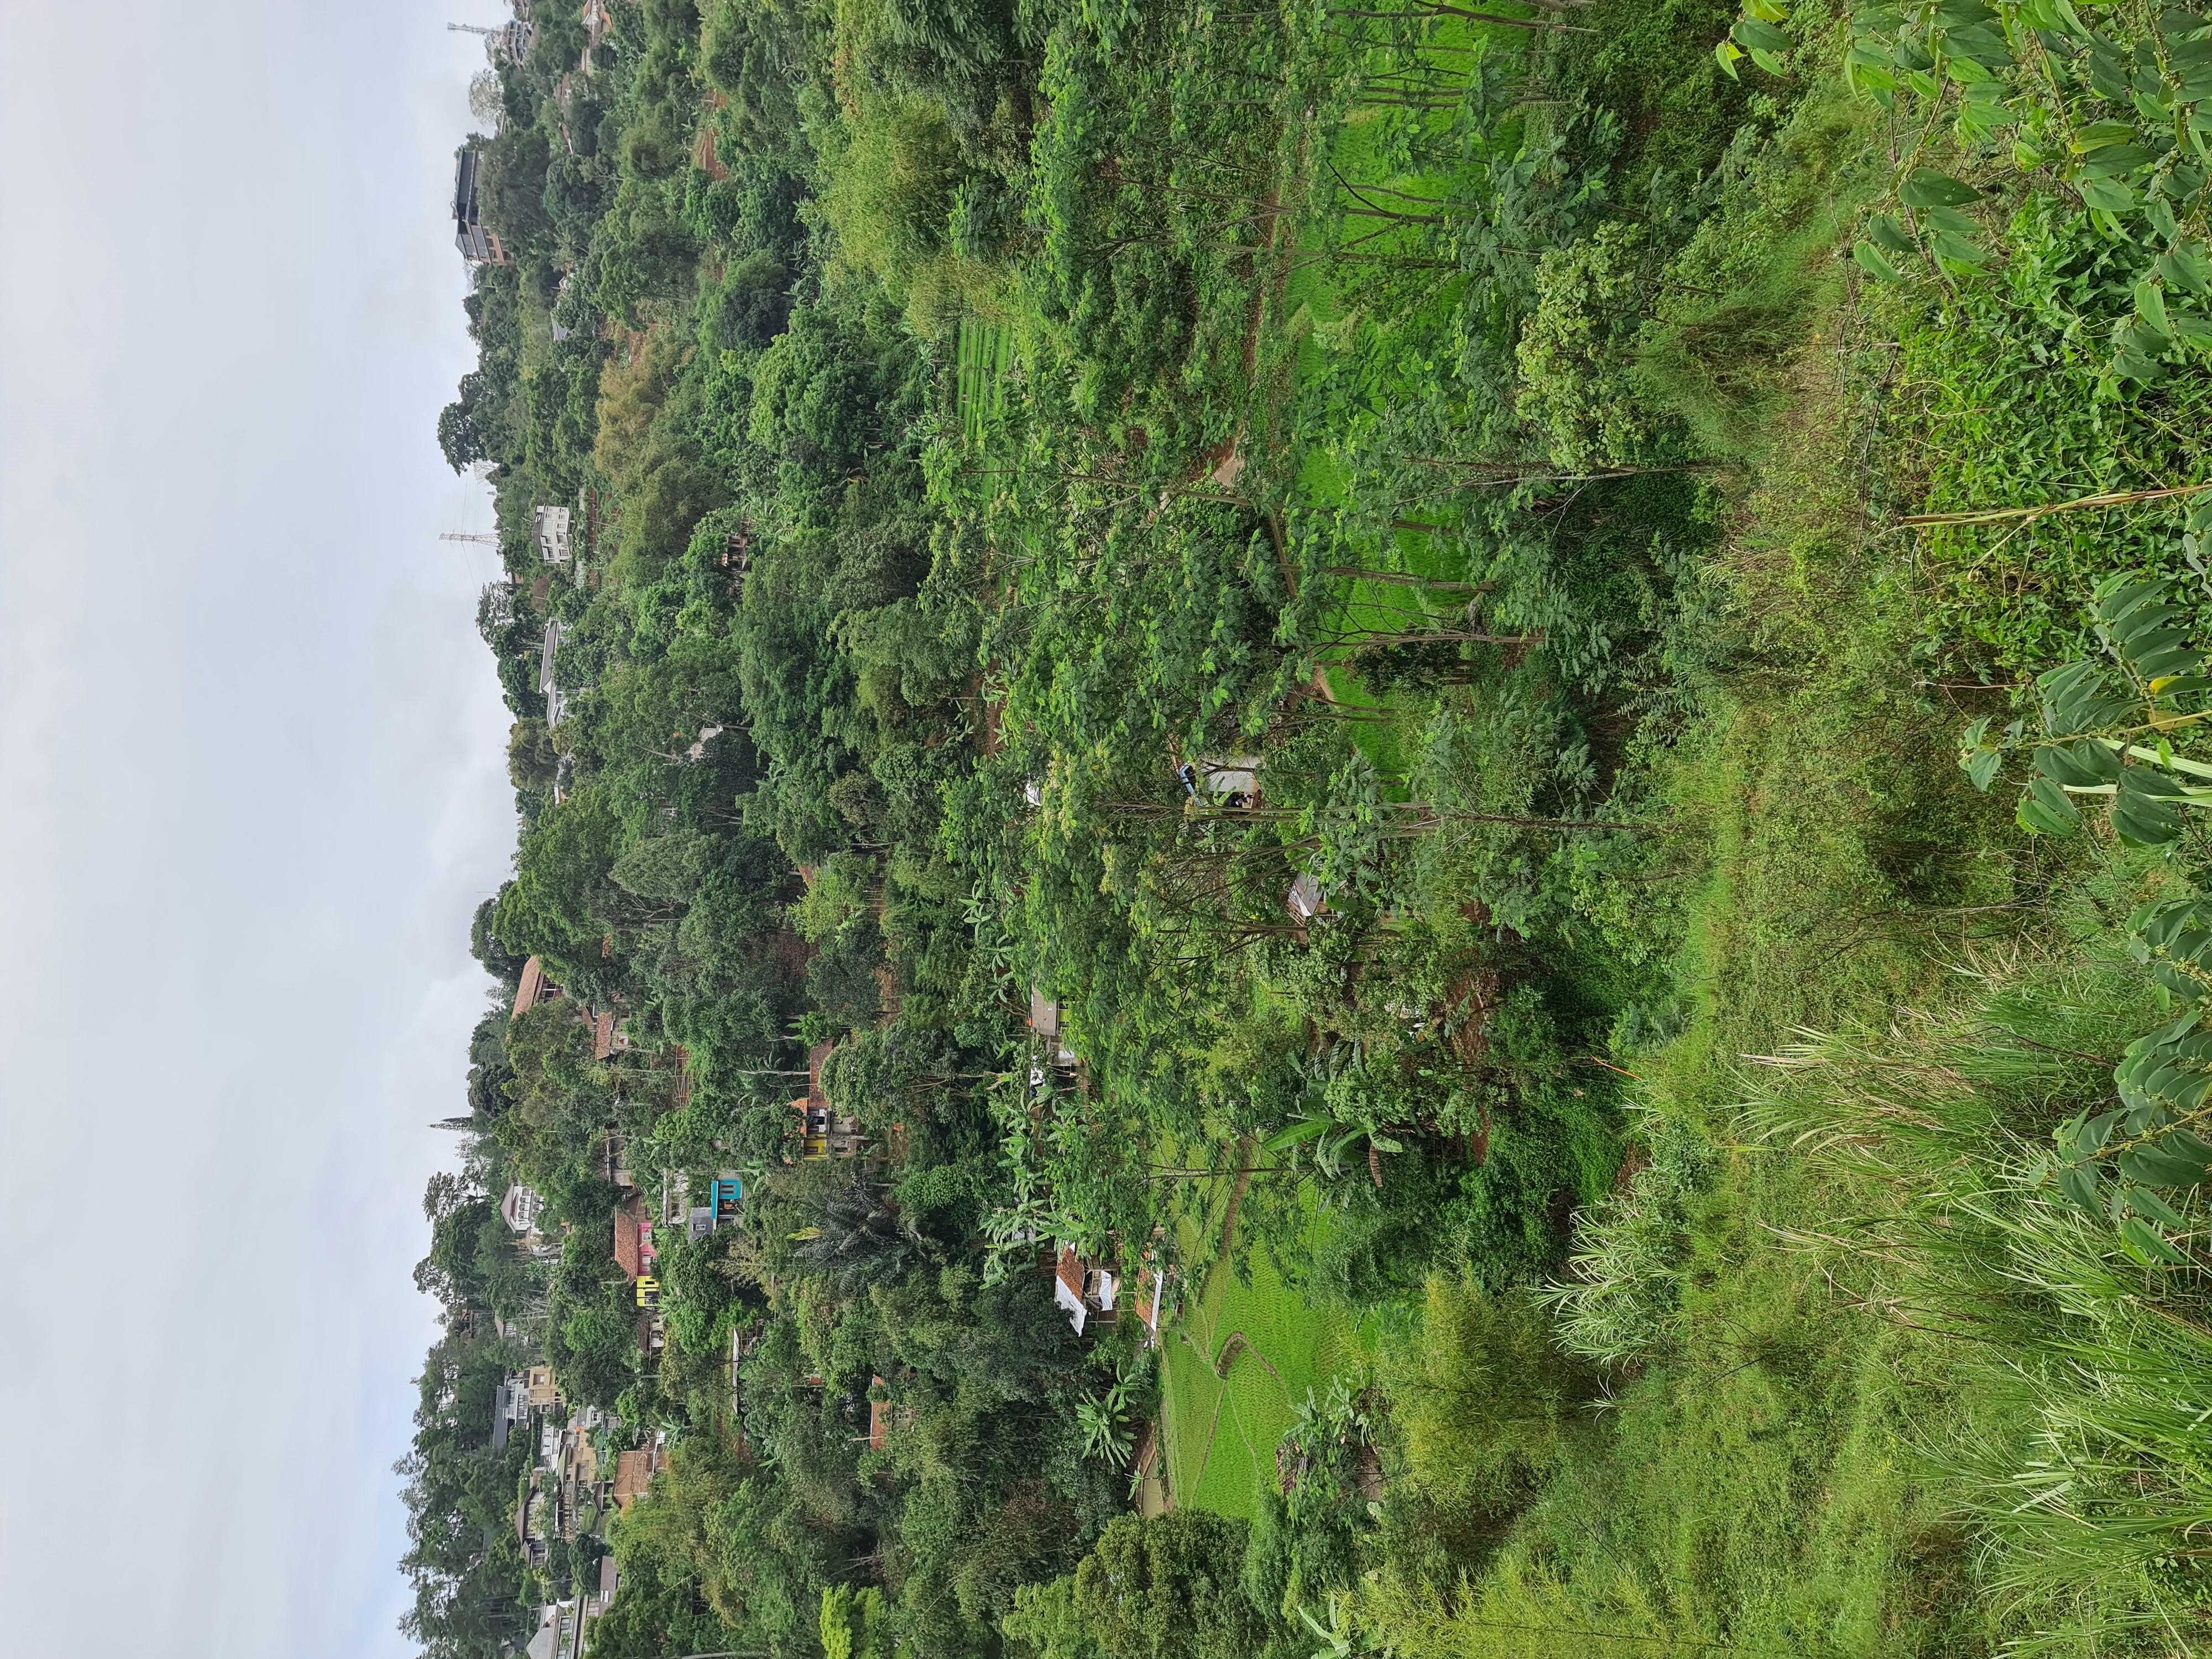 2/35 - Setelah melewati Awiligar, kita dapat menikmati bukit-bukit kecil. Beberapa bagian masih ditumbuhi pohon, namun banyak yang sudah beralih fungsi menjadi ladang pertanian dan vila-vila